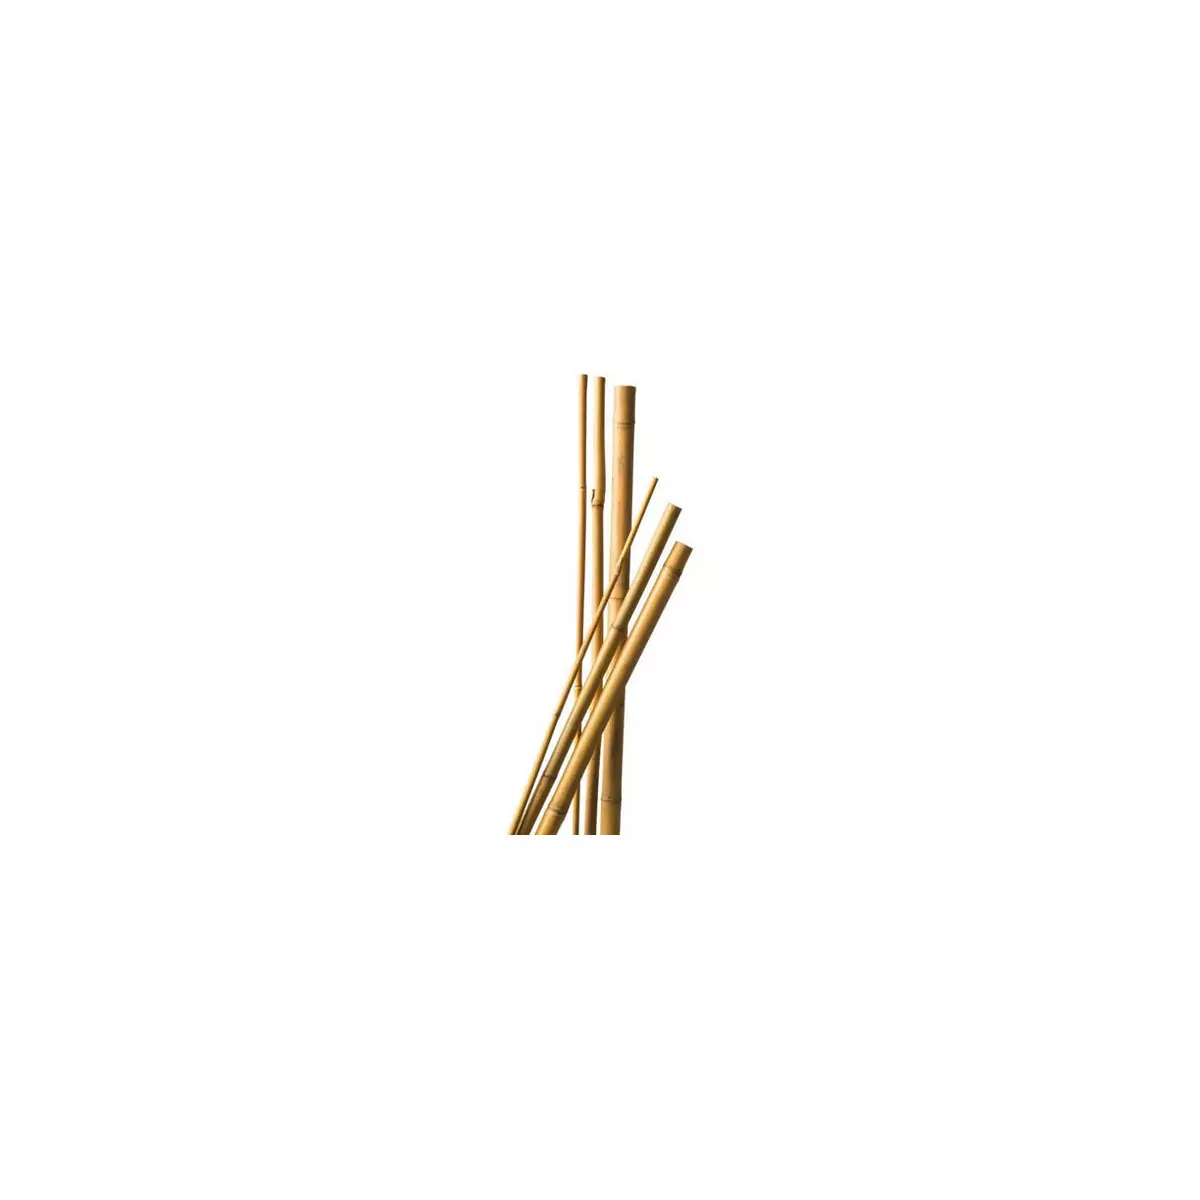 7 Bamboo Tutors 90 cm diam 6-8 cm